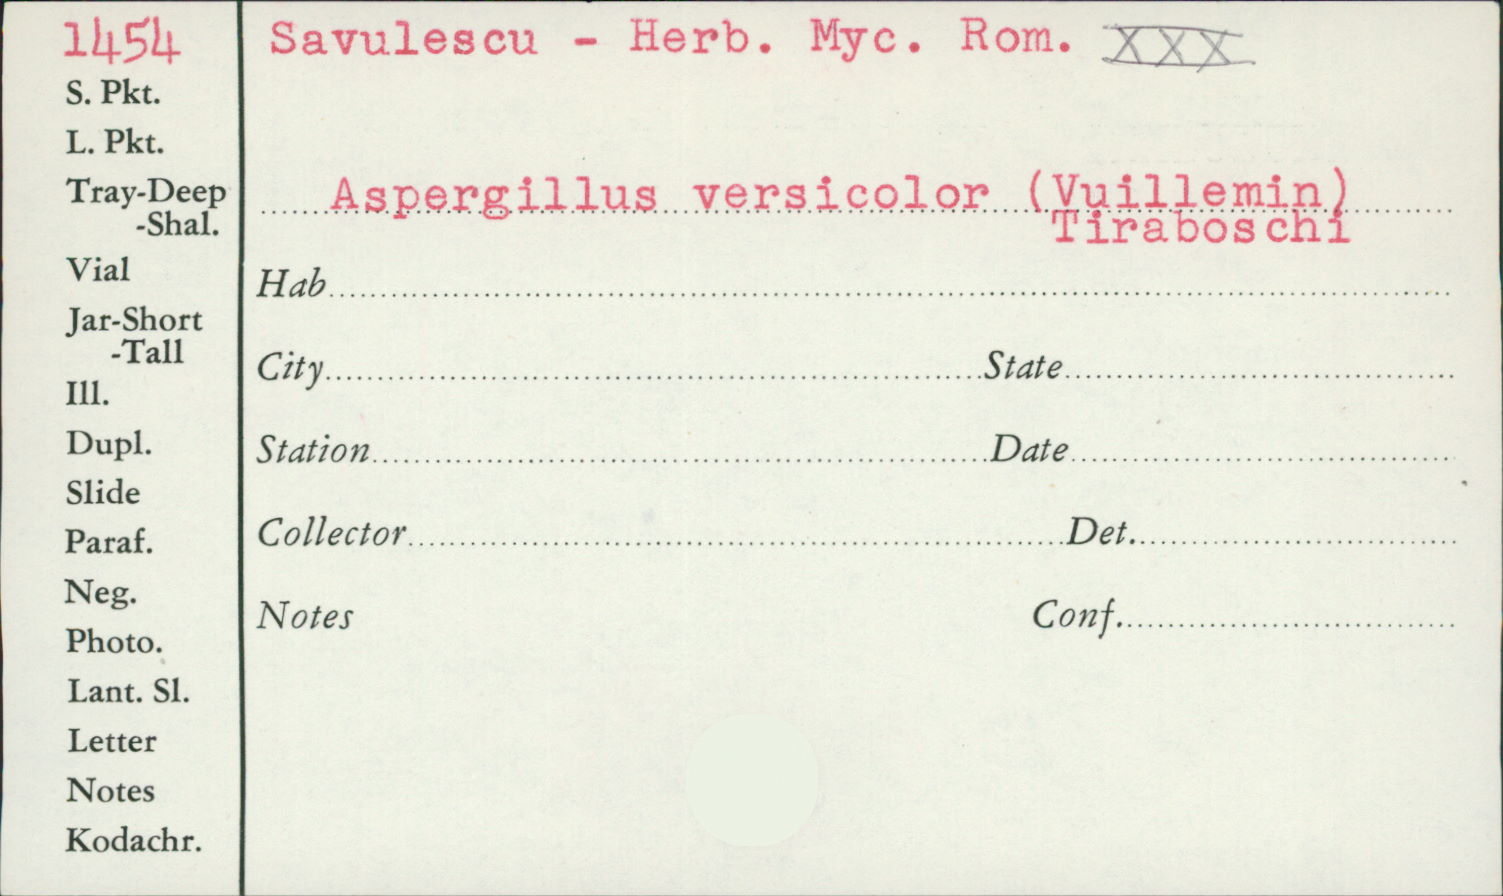 Aspergillus versicolor image